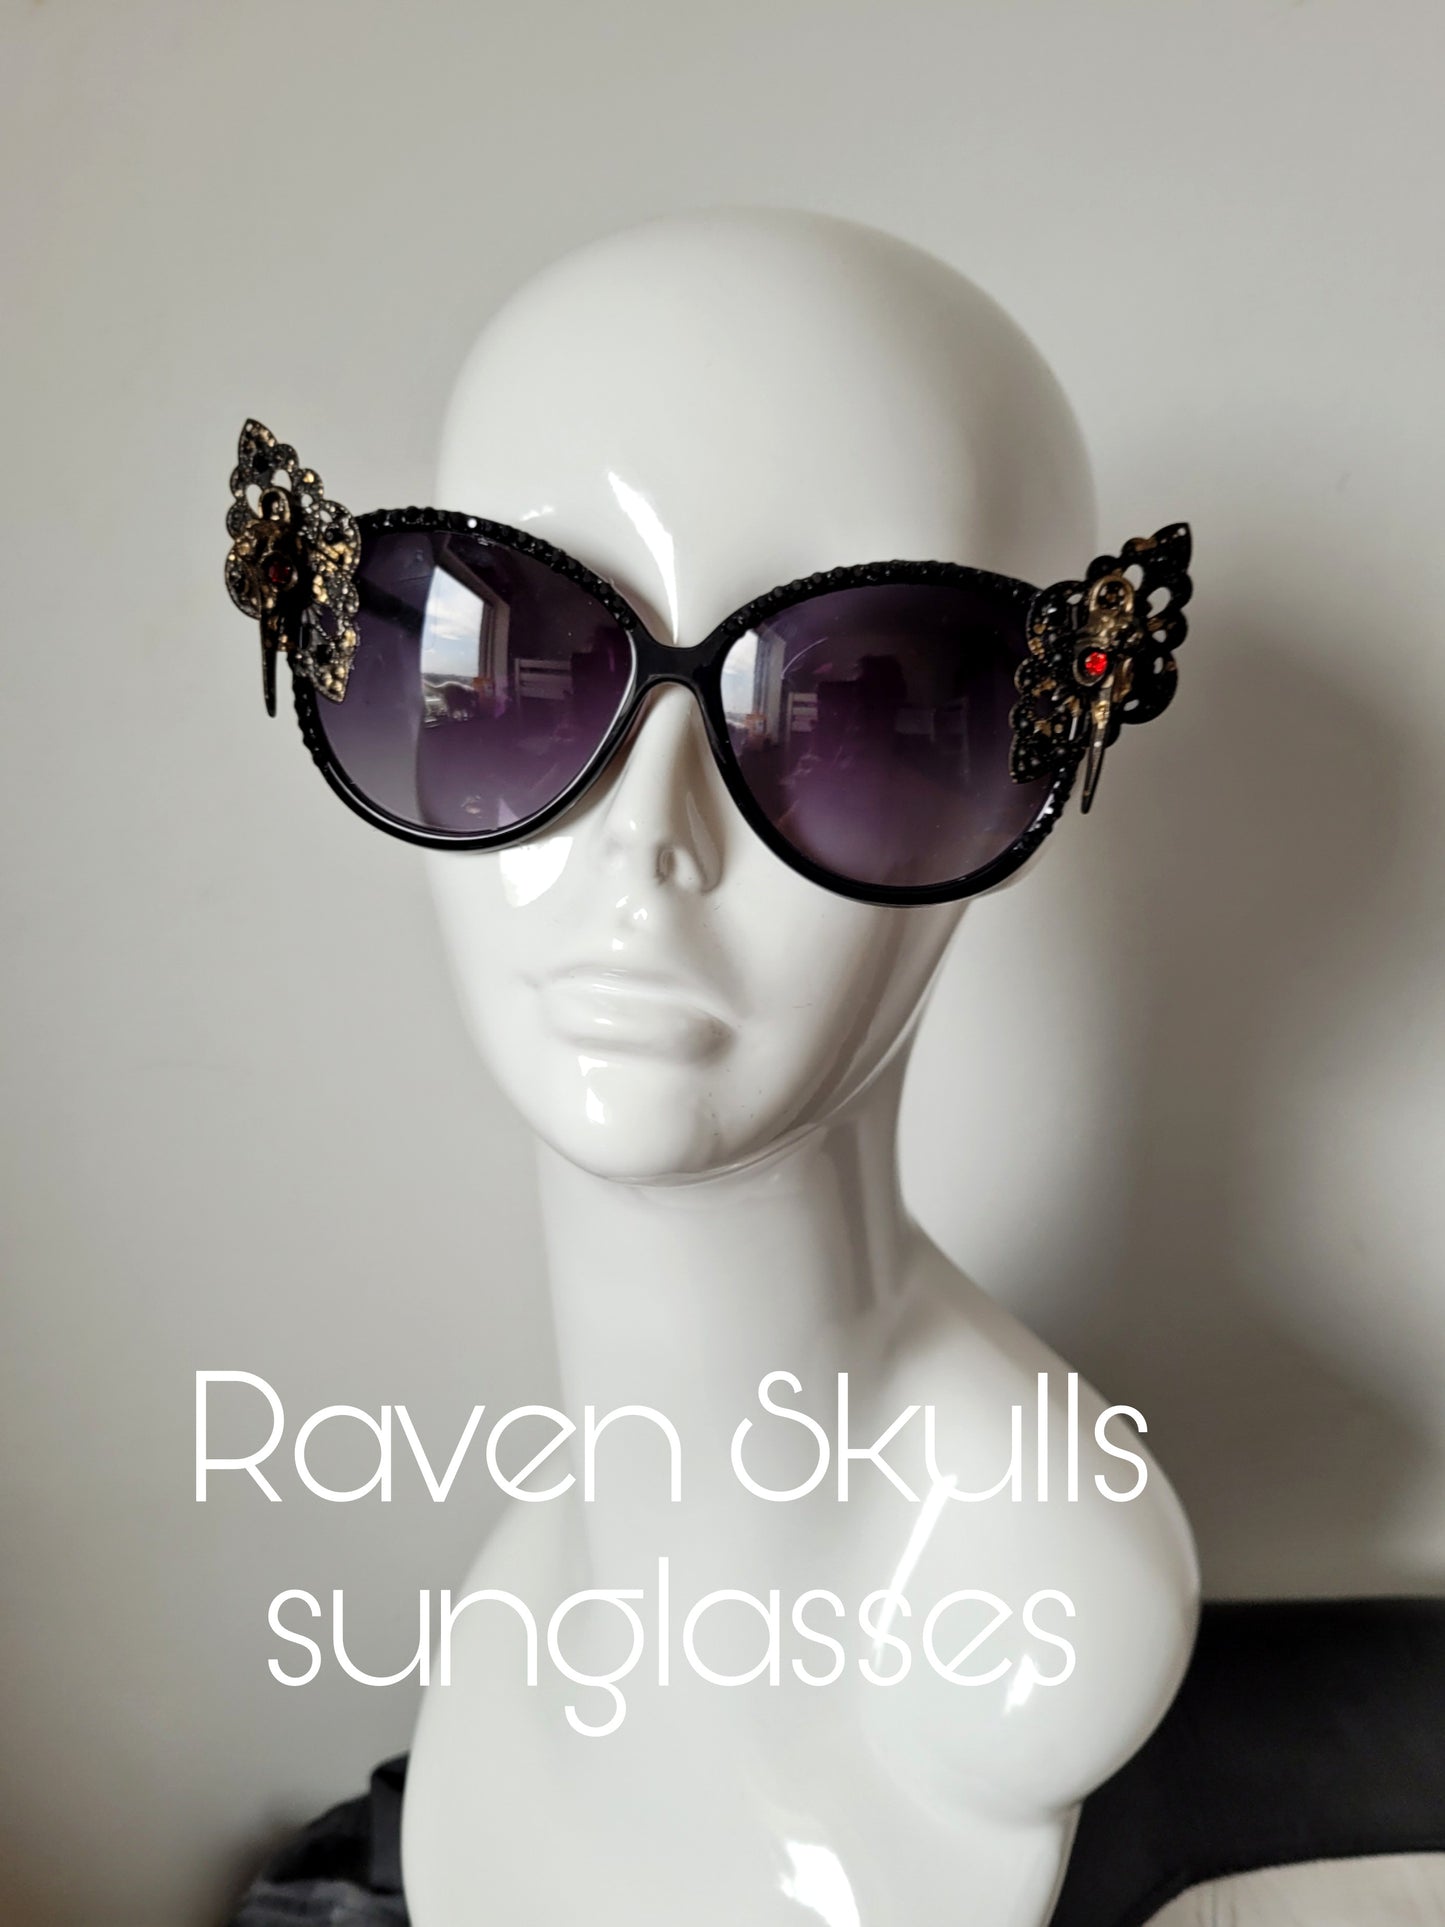 Midnight Garden Collection: The Raven Skulls Sunglasses